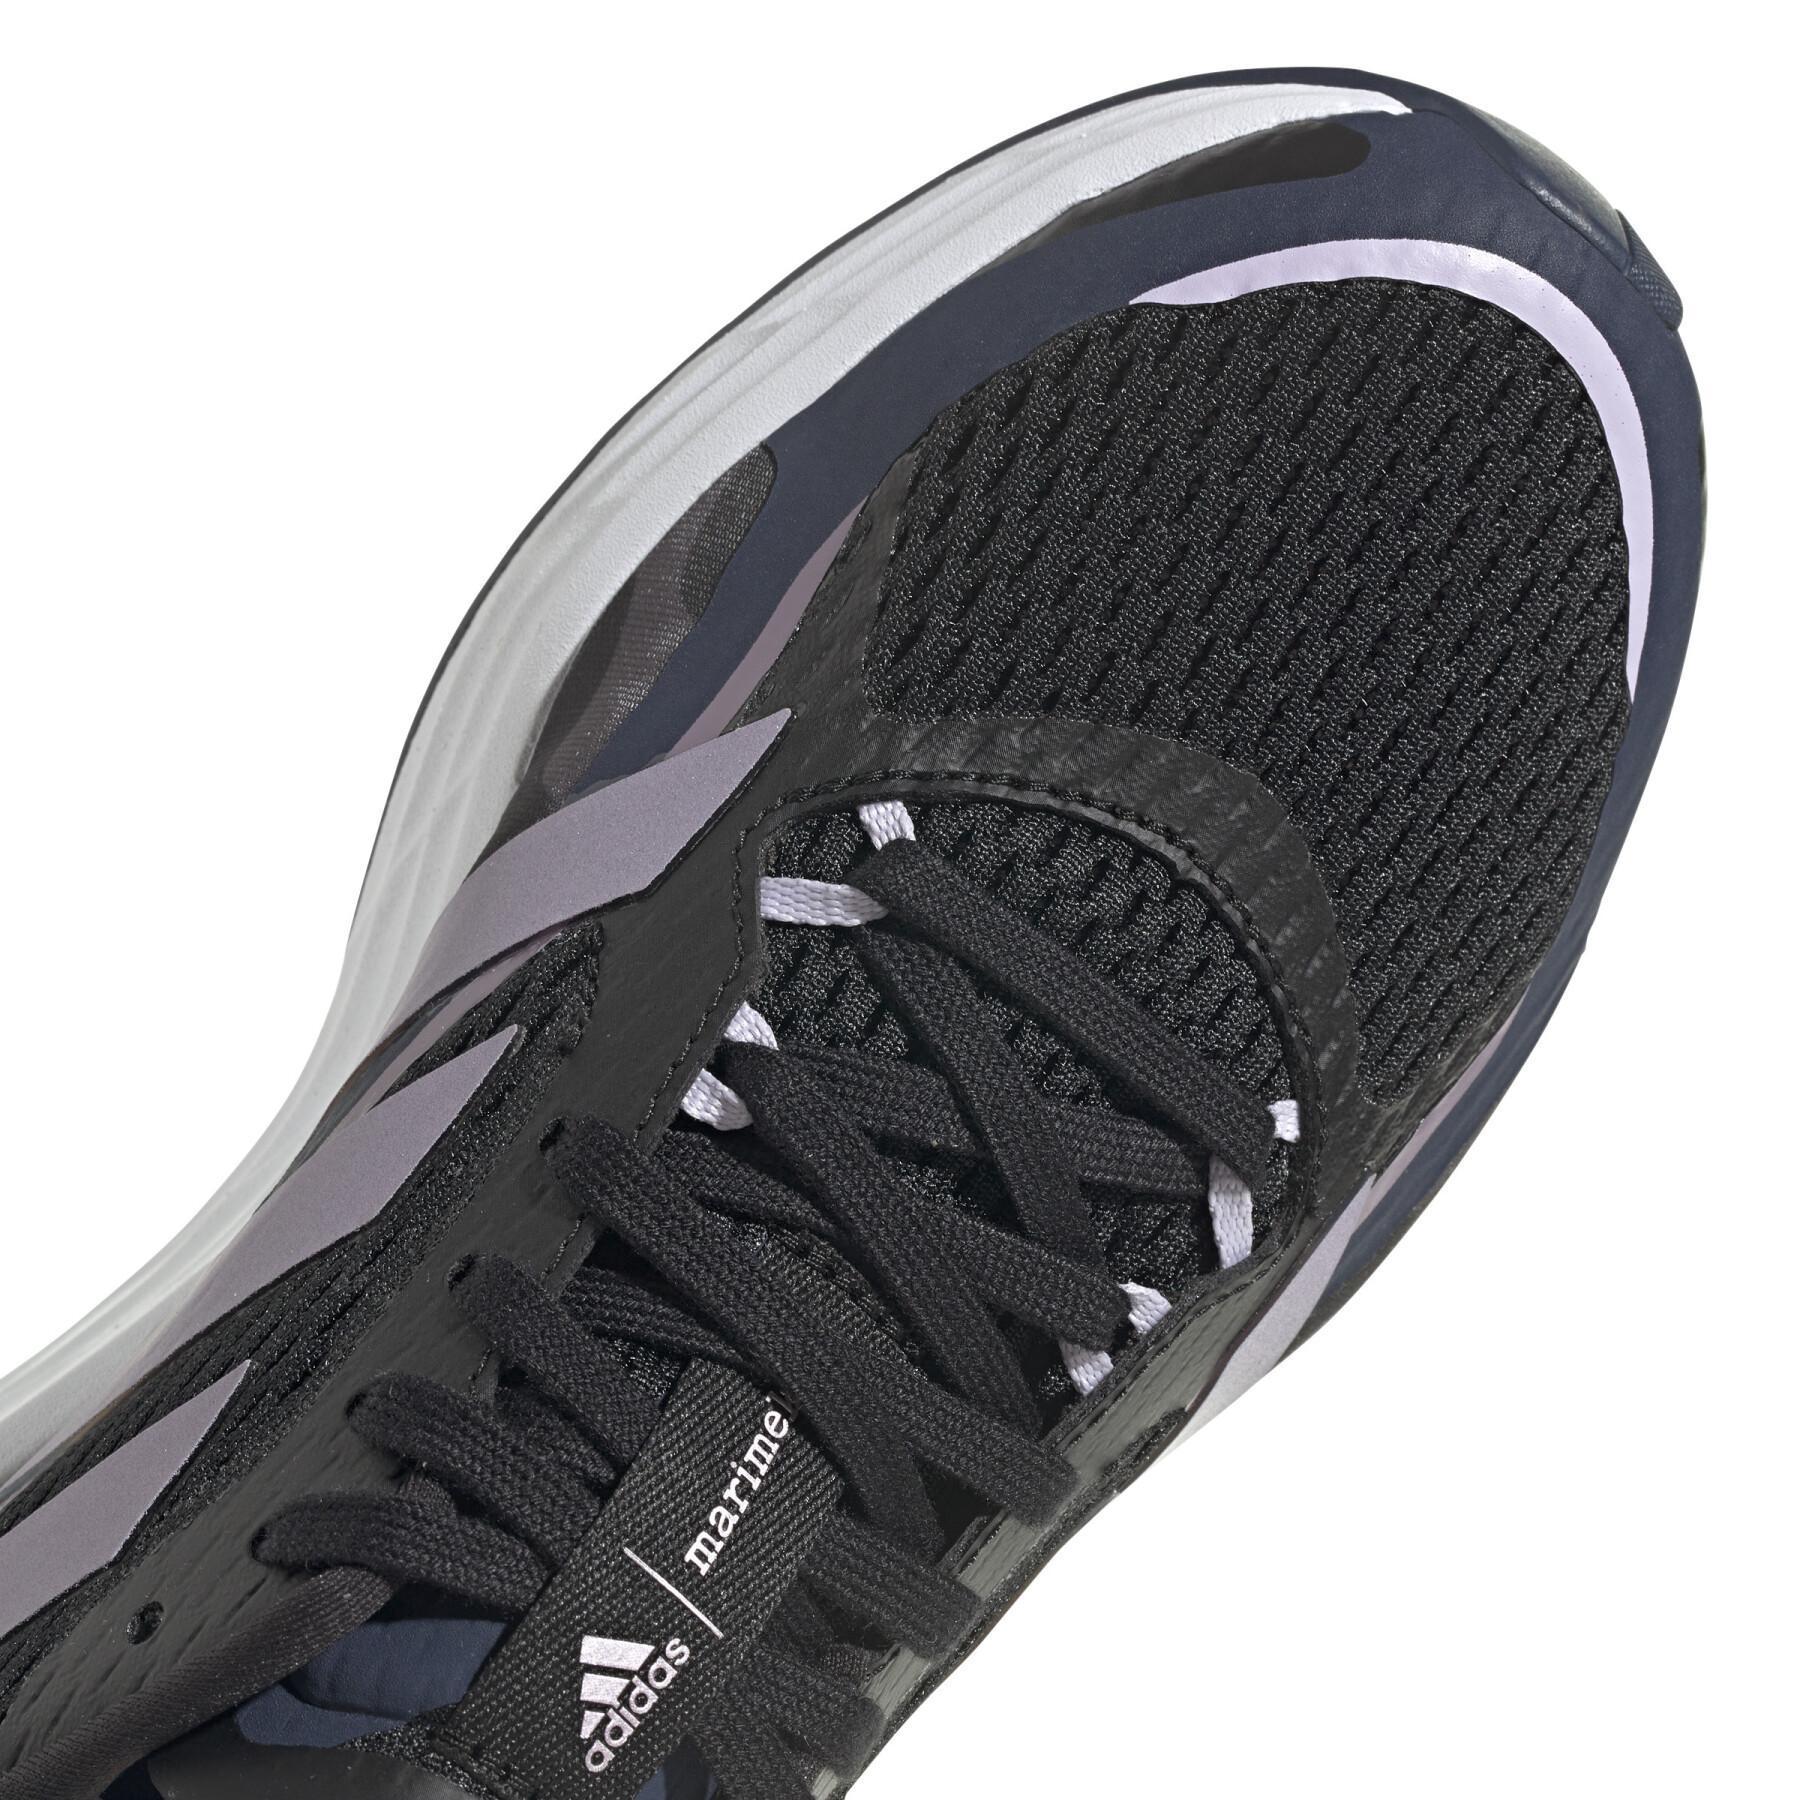 Sapatos de corrida para mulheres adidas SL20 X Marimekko